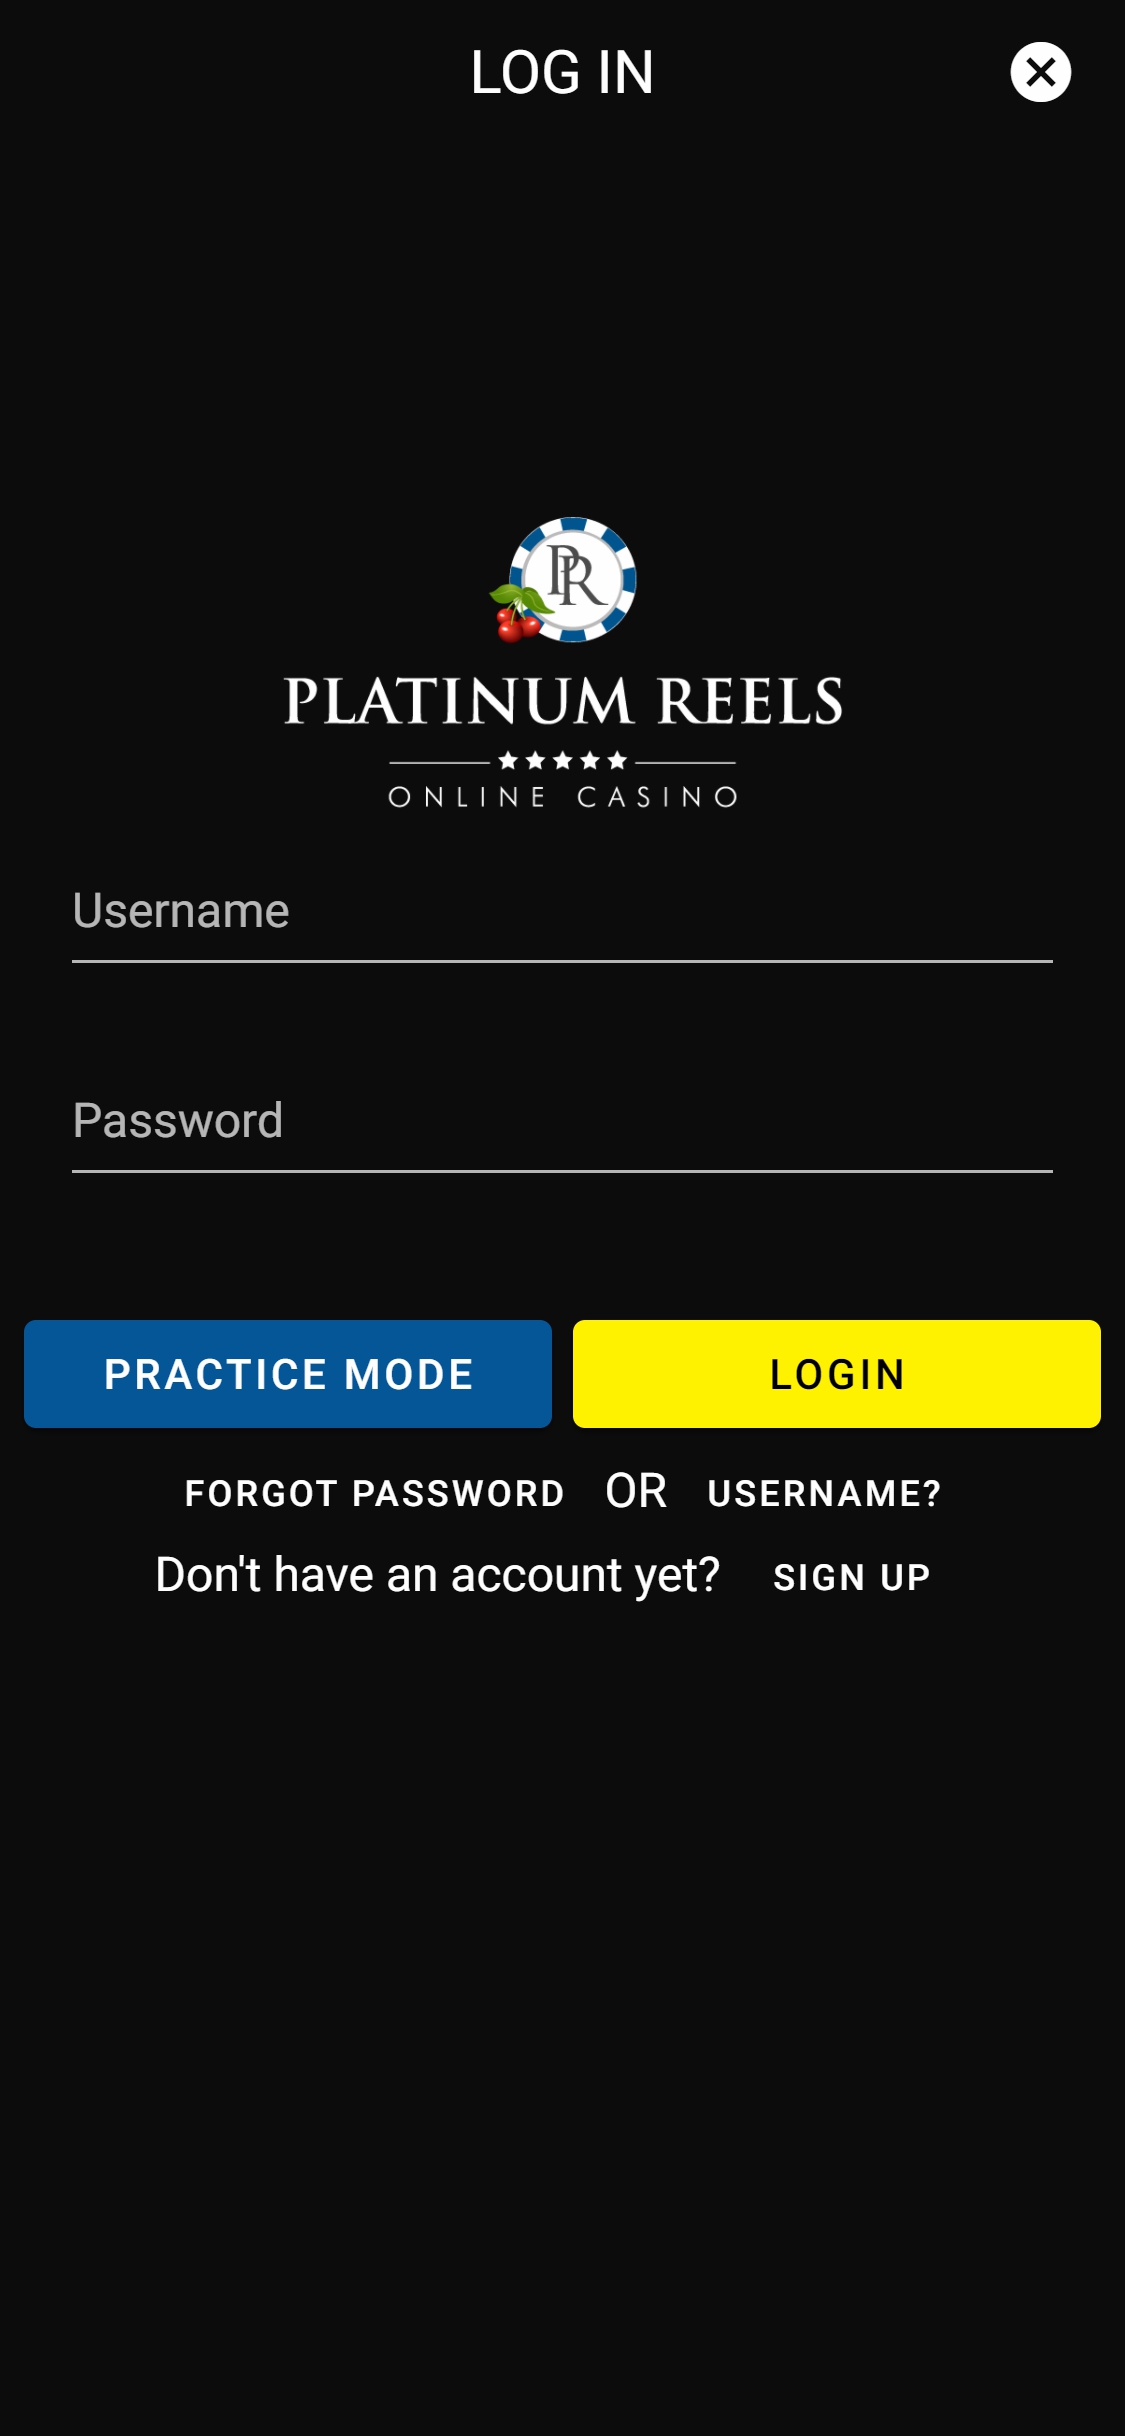 Platinum Reels Casino Mobile Login Review